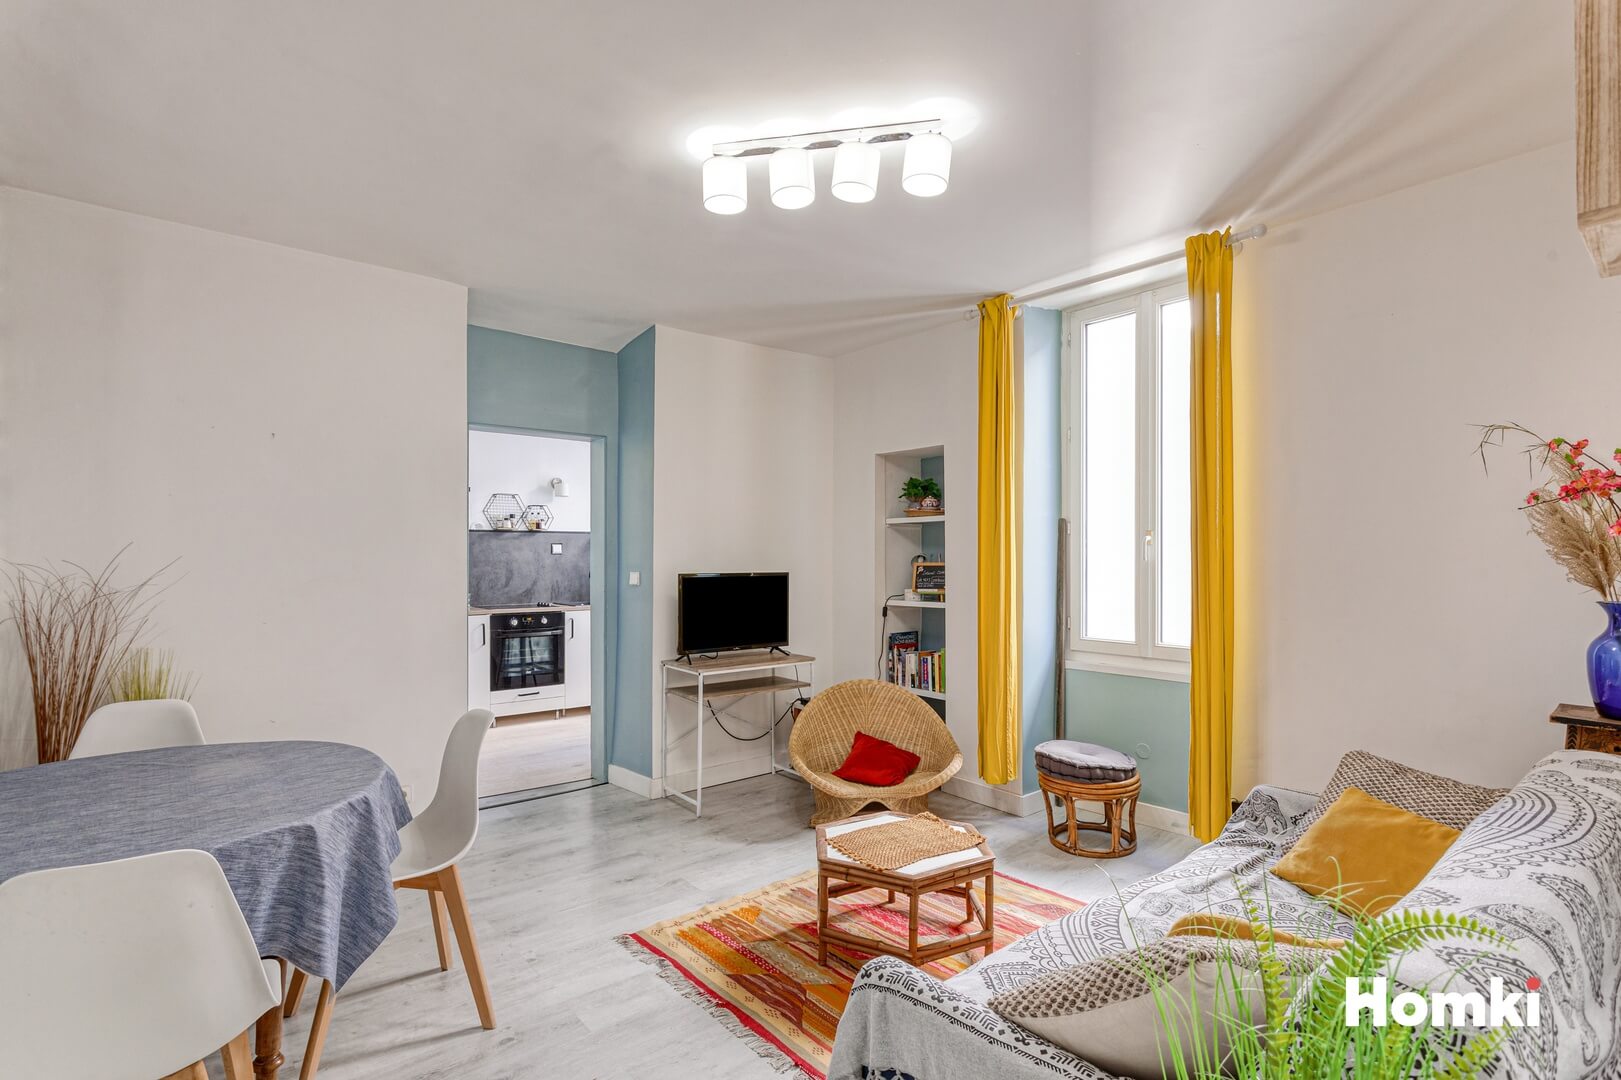 Homki - Vente Appartement  de 38.0 m² à Aix-les-Bains 73100